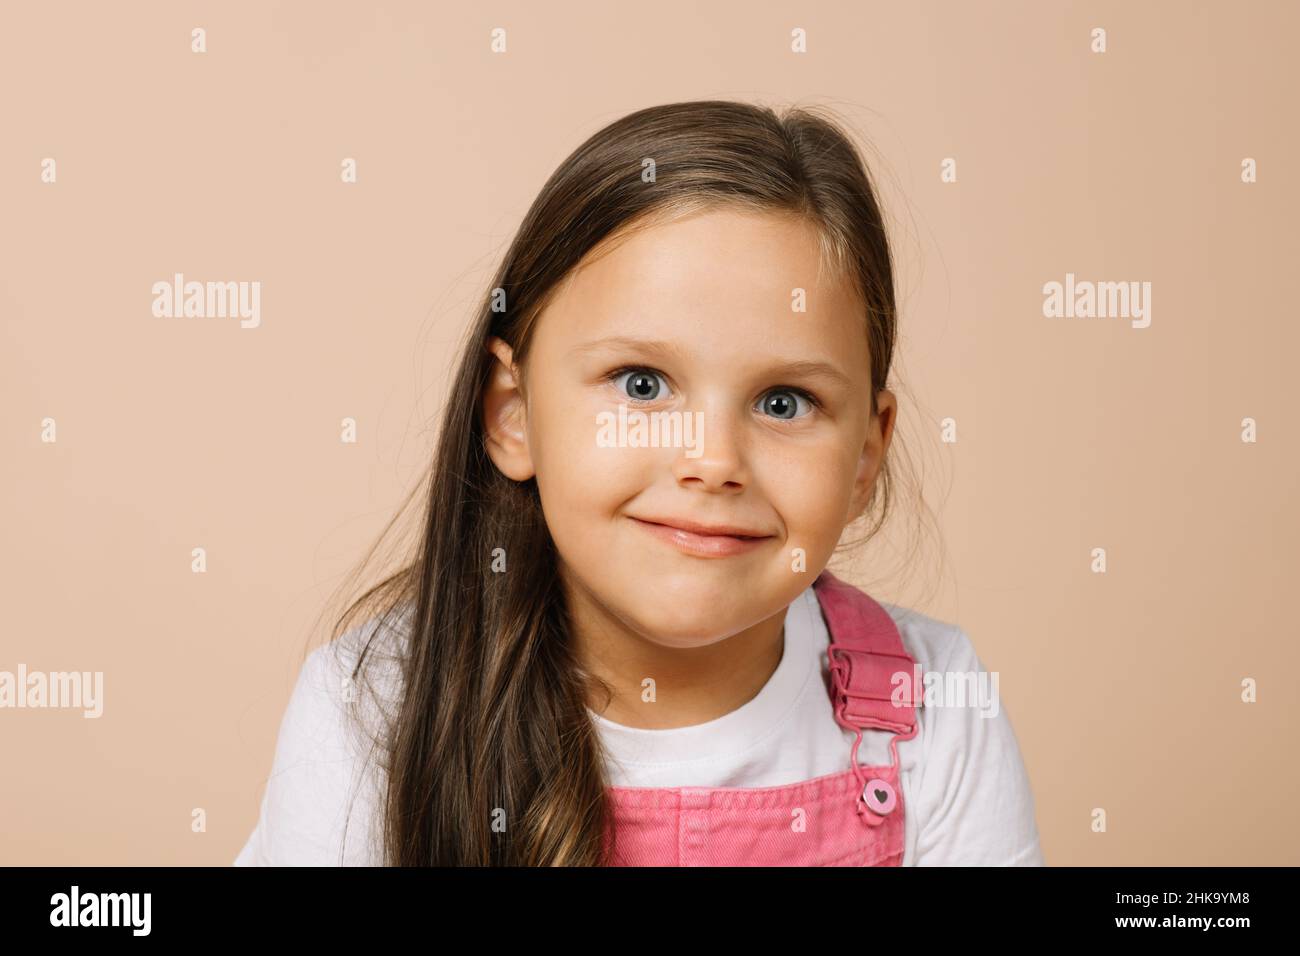 Porträt eines Kindes mit leuchtenden, leicht auskragenden Augen und einem glückseligen Lächeln, das die Kamera in einem leuchtend rosa Jumpsuit und einem weißen T-Shirt auf Beige anschaut Stockfoto